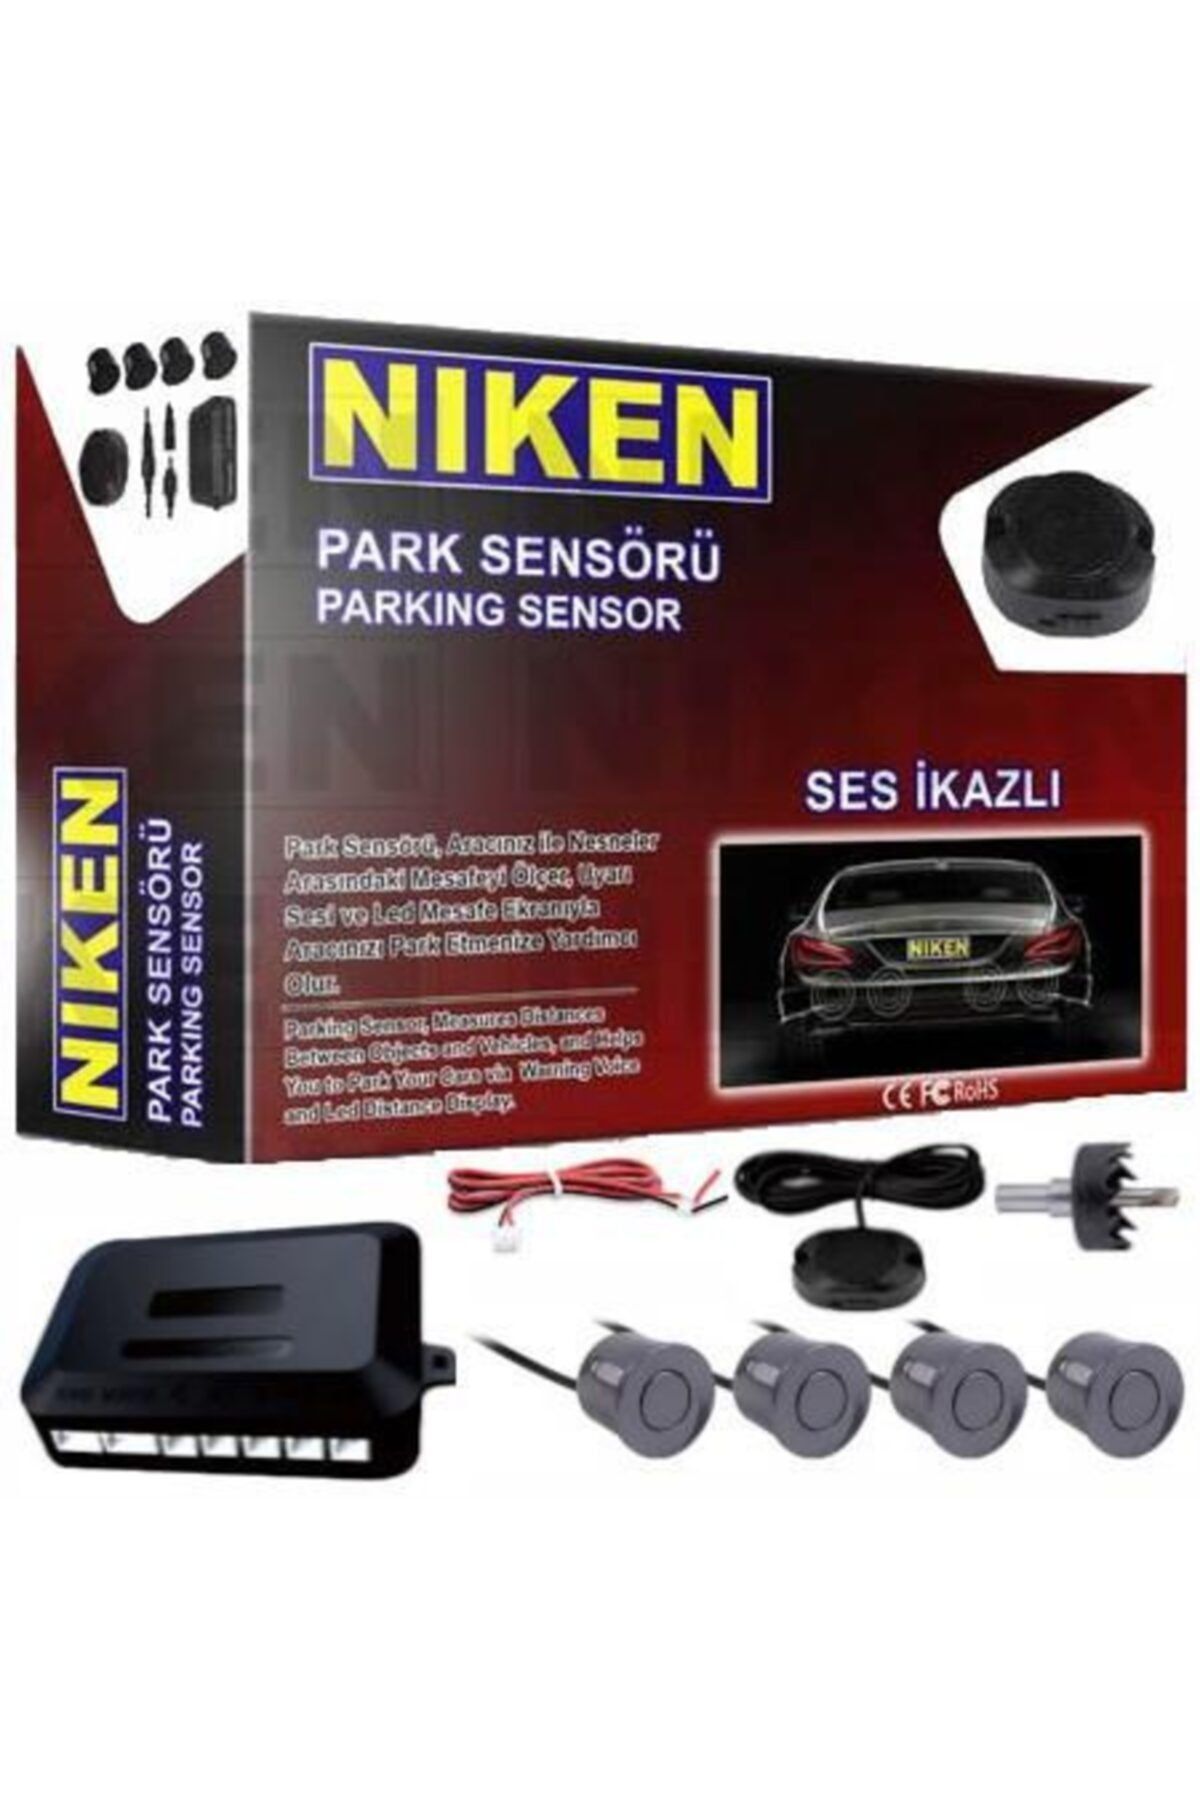 Niken Park Sensörü Ses Ikazlı 22mm Gri Sensör